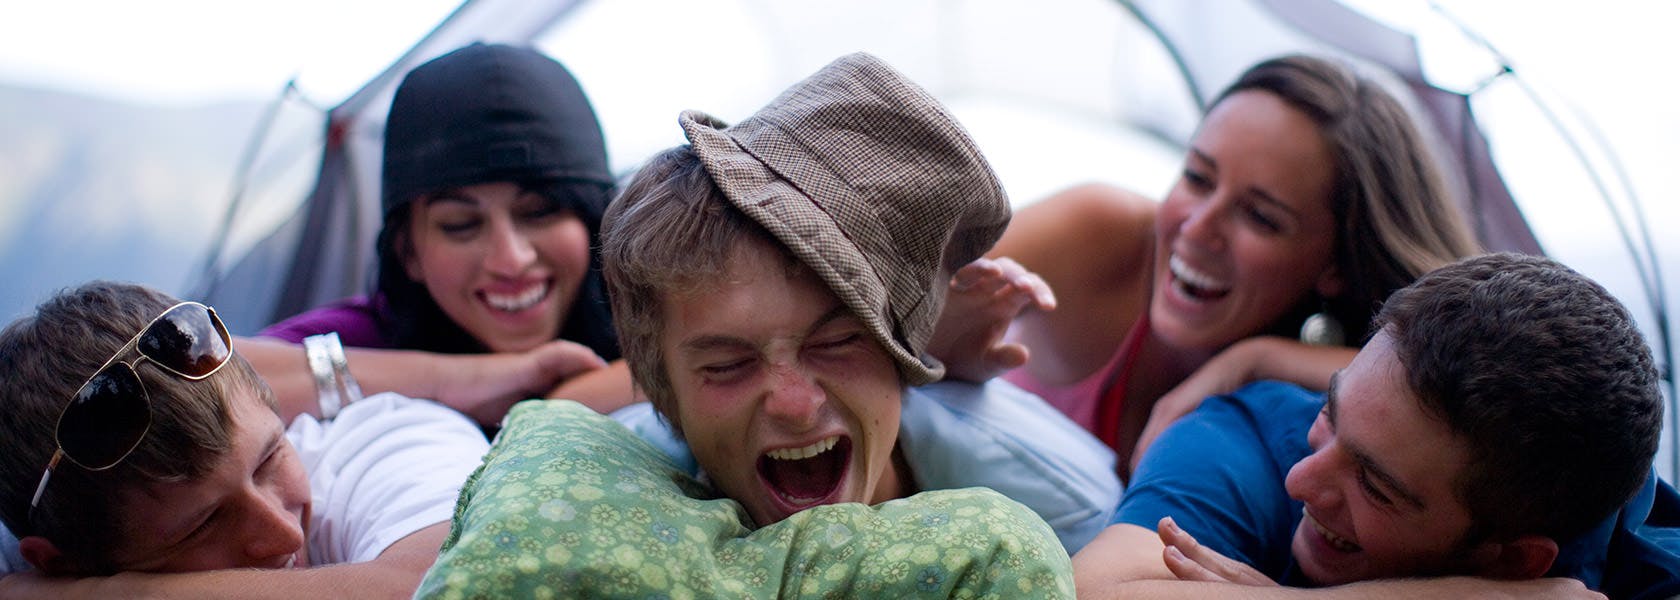 Đám bạn cười đùa khi nằm chất lên nhau trong chuyến đi cắm trại